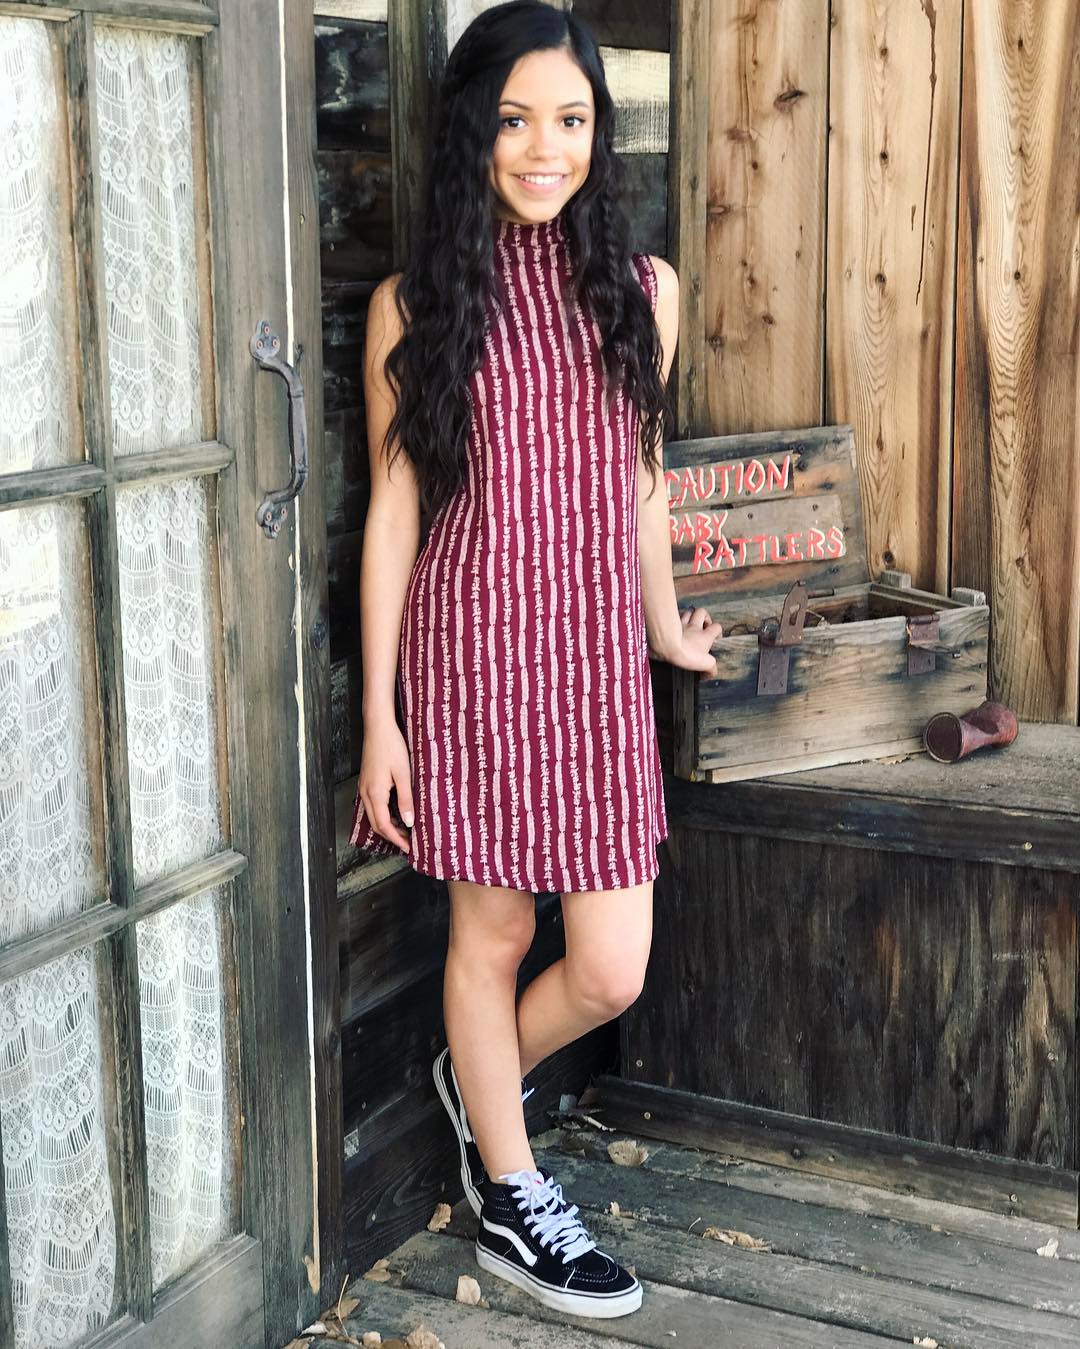 Jenna Ortega - Instagram and social media 1-26 | GotCeleb